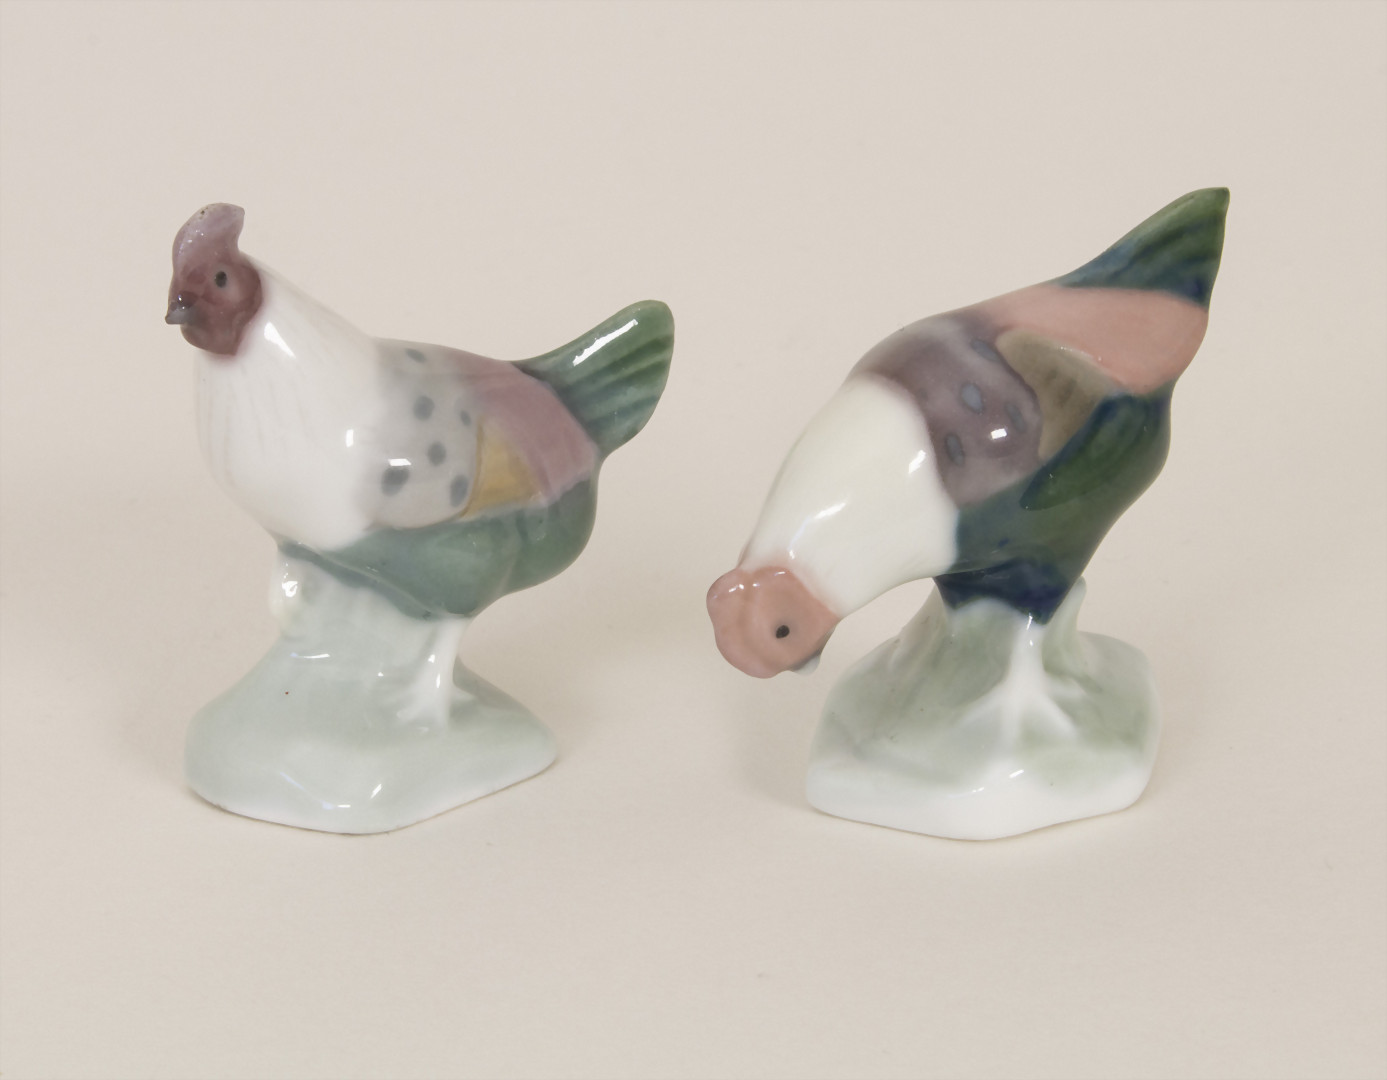 2 Miniatur Hühner / 2 minature chickens, wohl Gebr. Heubach, Lichte, um 1900